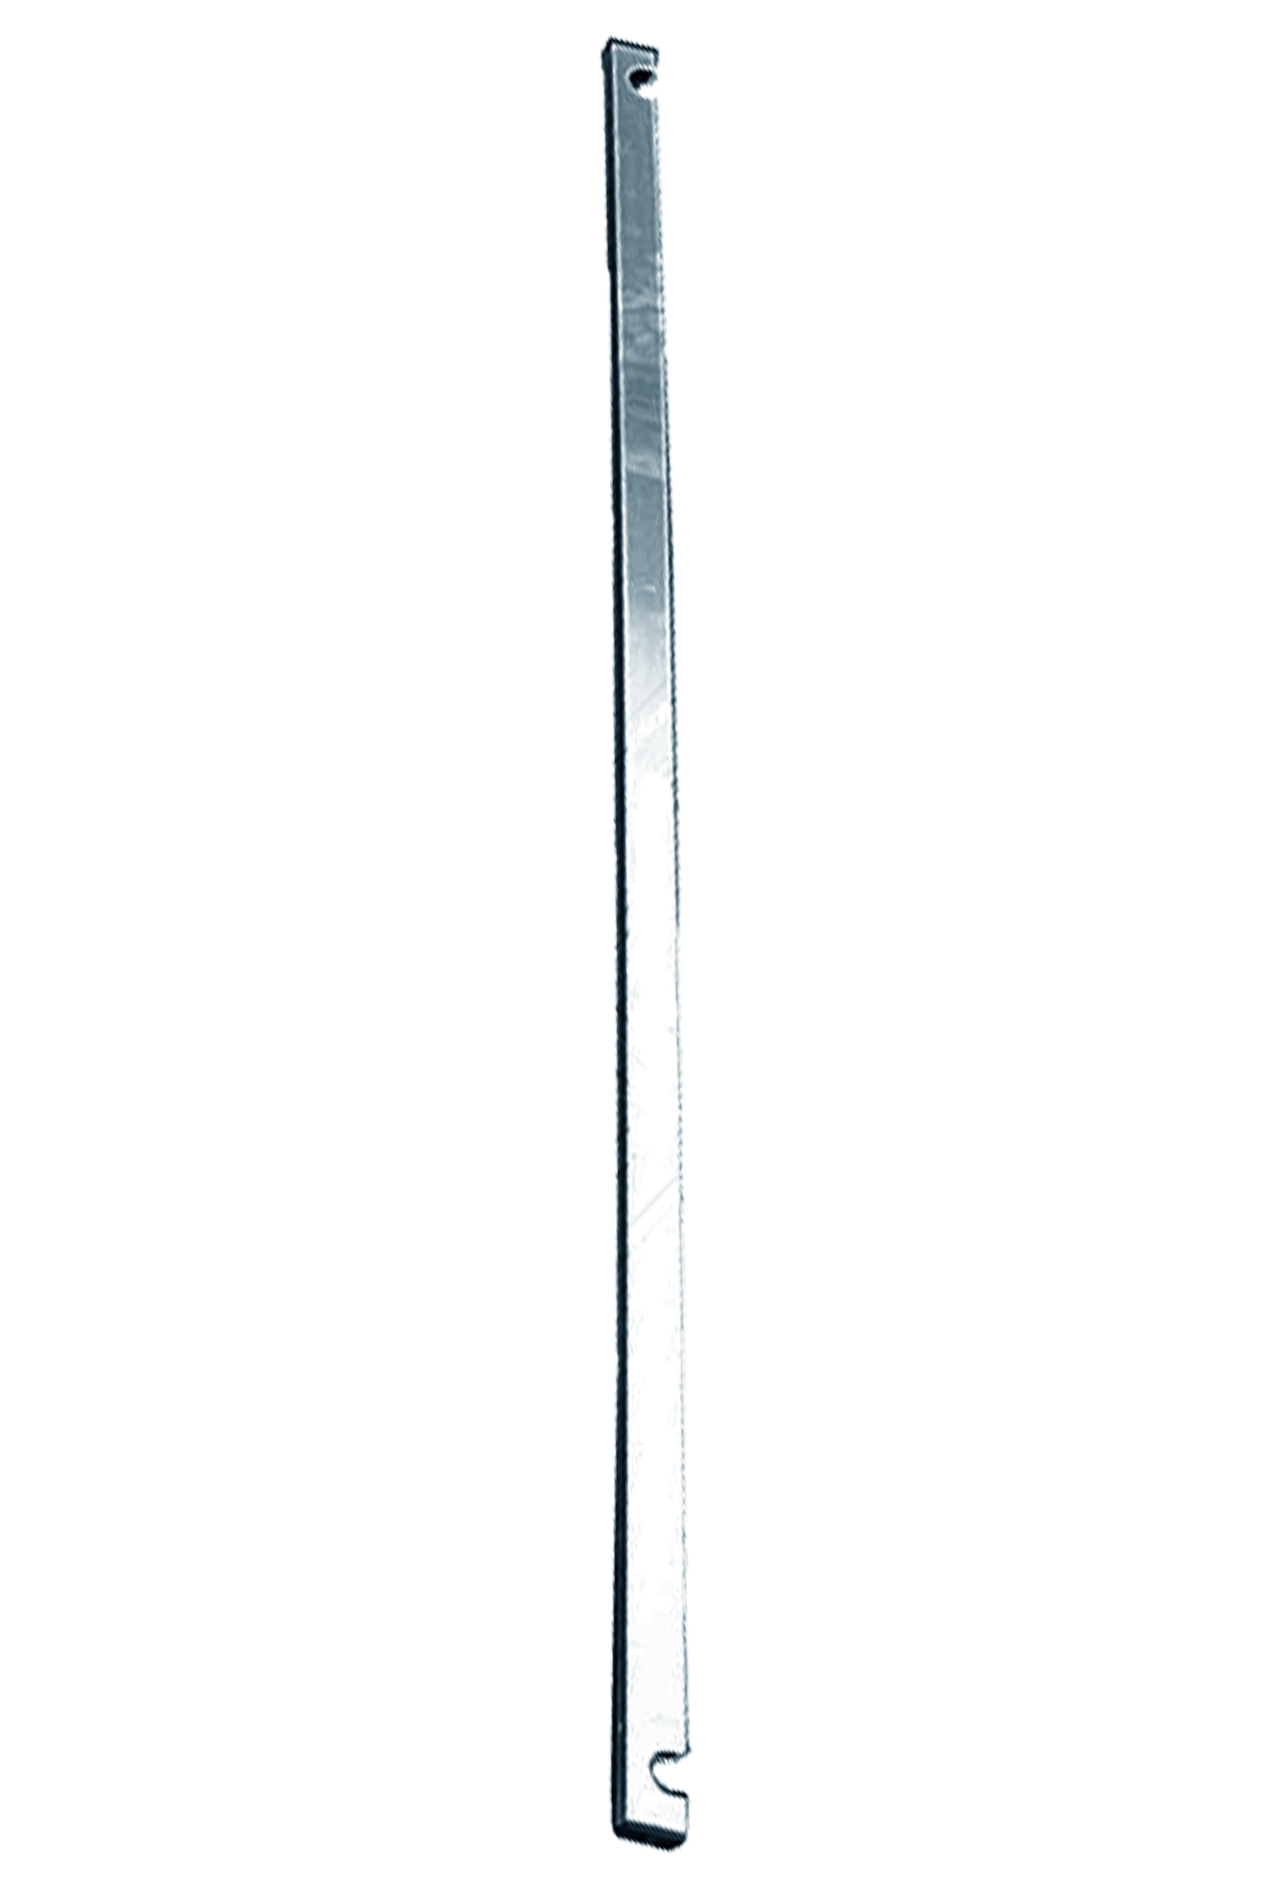 Дополнительное изображение STABILO 100-2 Передвижные подмости, рабочая высота 7,3 м, размер площадки (2.0x0.75 м)